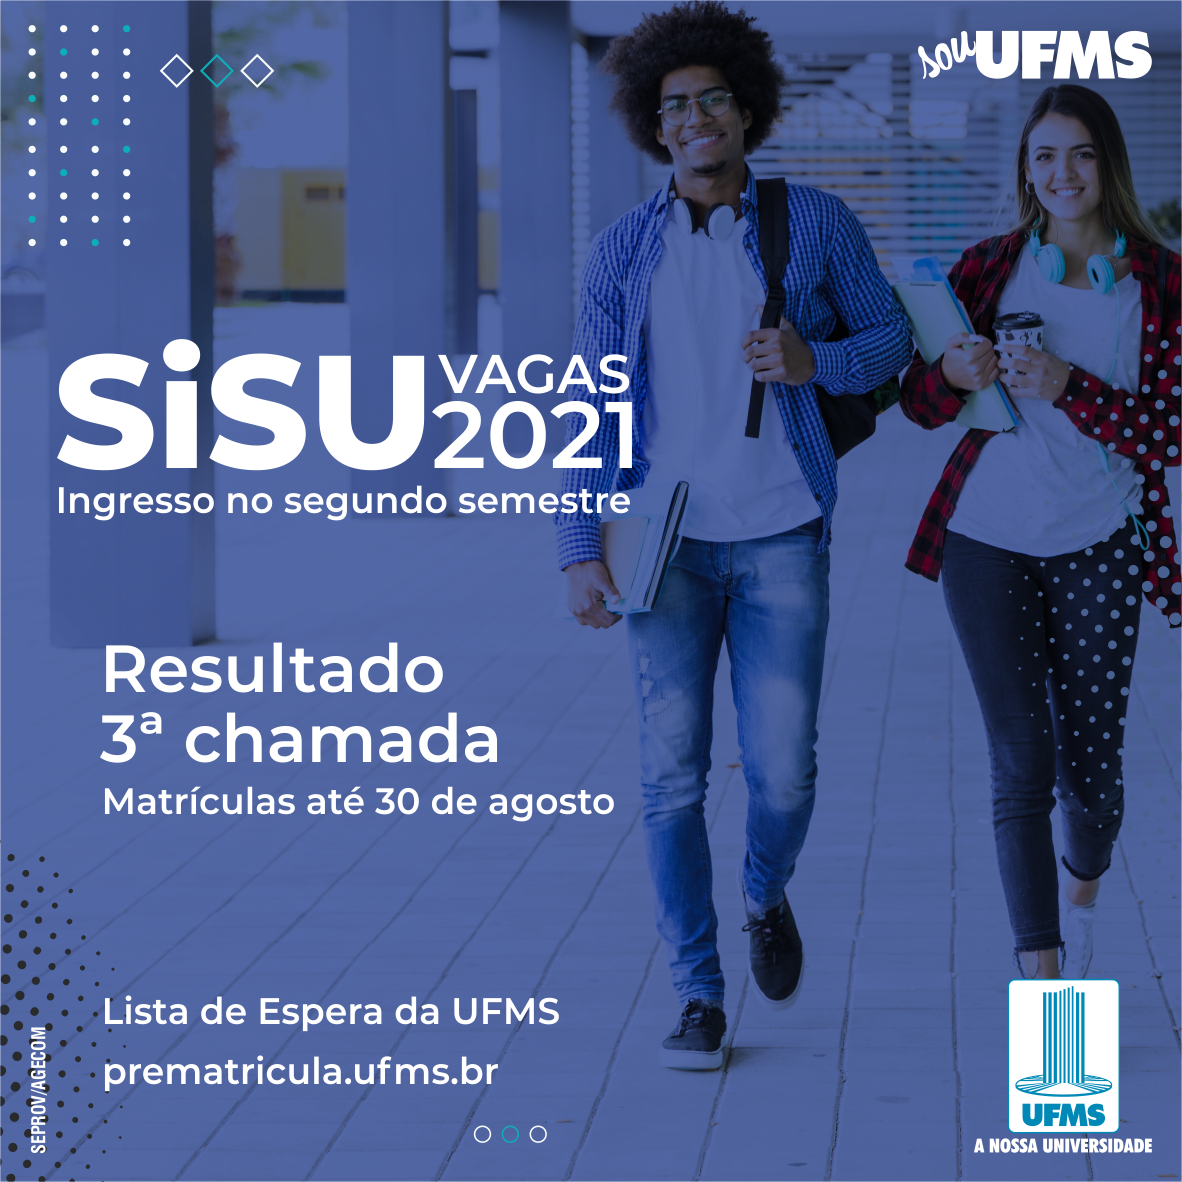 UFMS abre inscrições para cursos de mestrado e doutorado em Três Lagoas, JPNews Três Lagoas